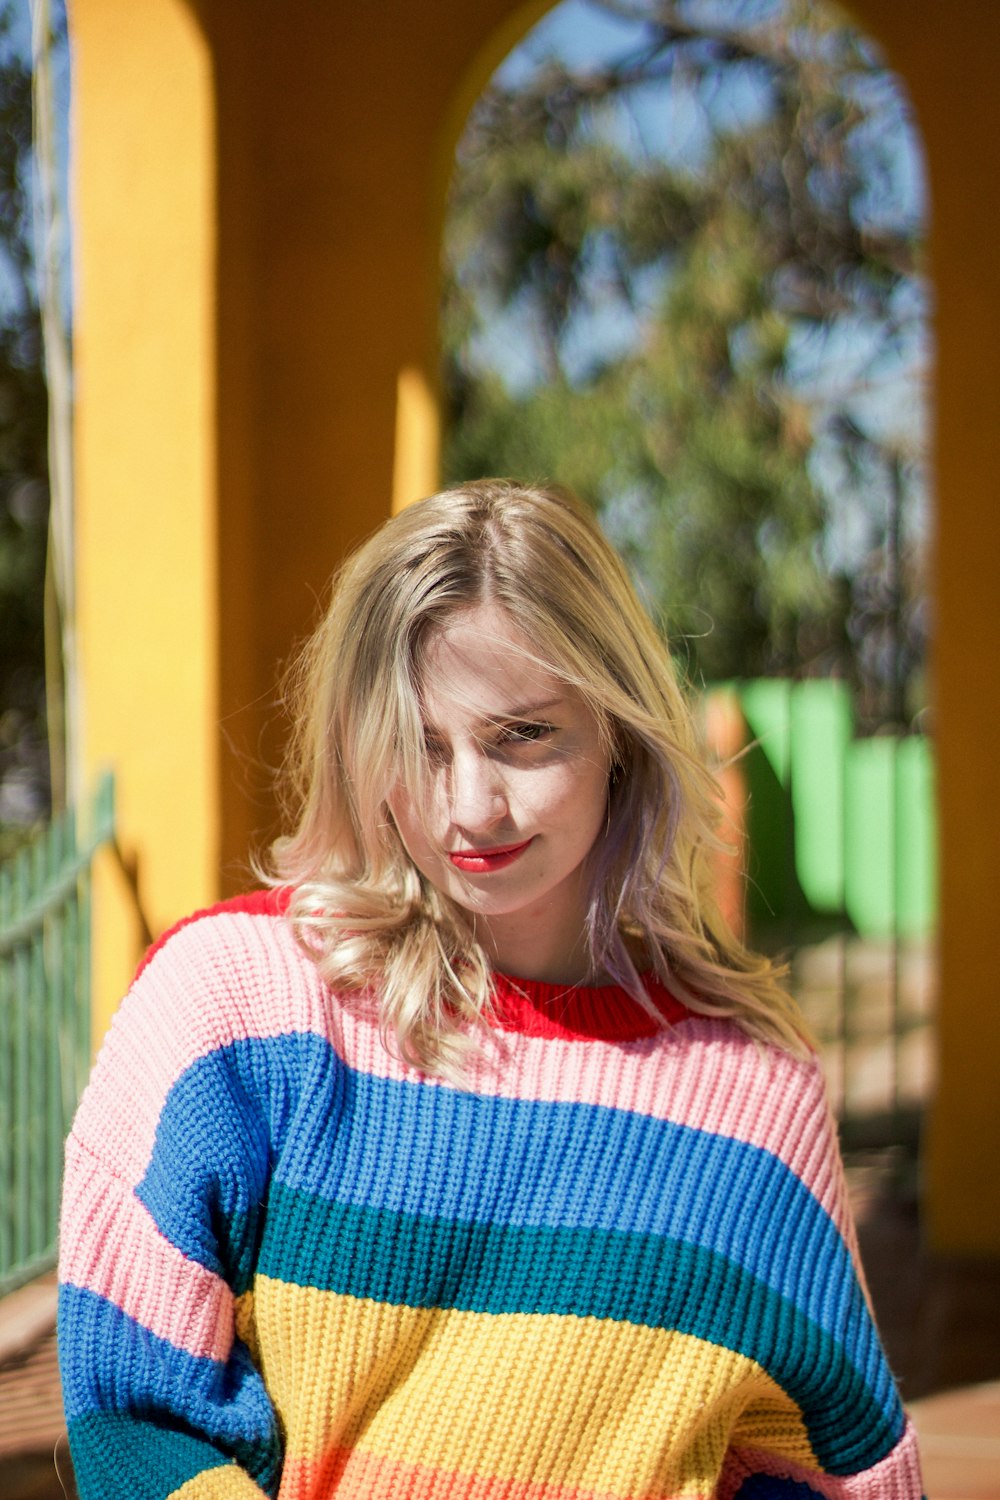 빨강, 분홍색, 파랑, 노란색 줄무늬 니트 스웨터를 입은 여자